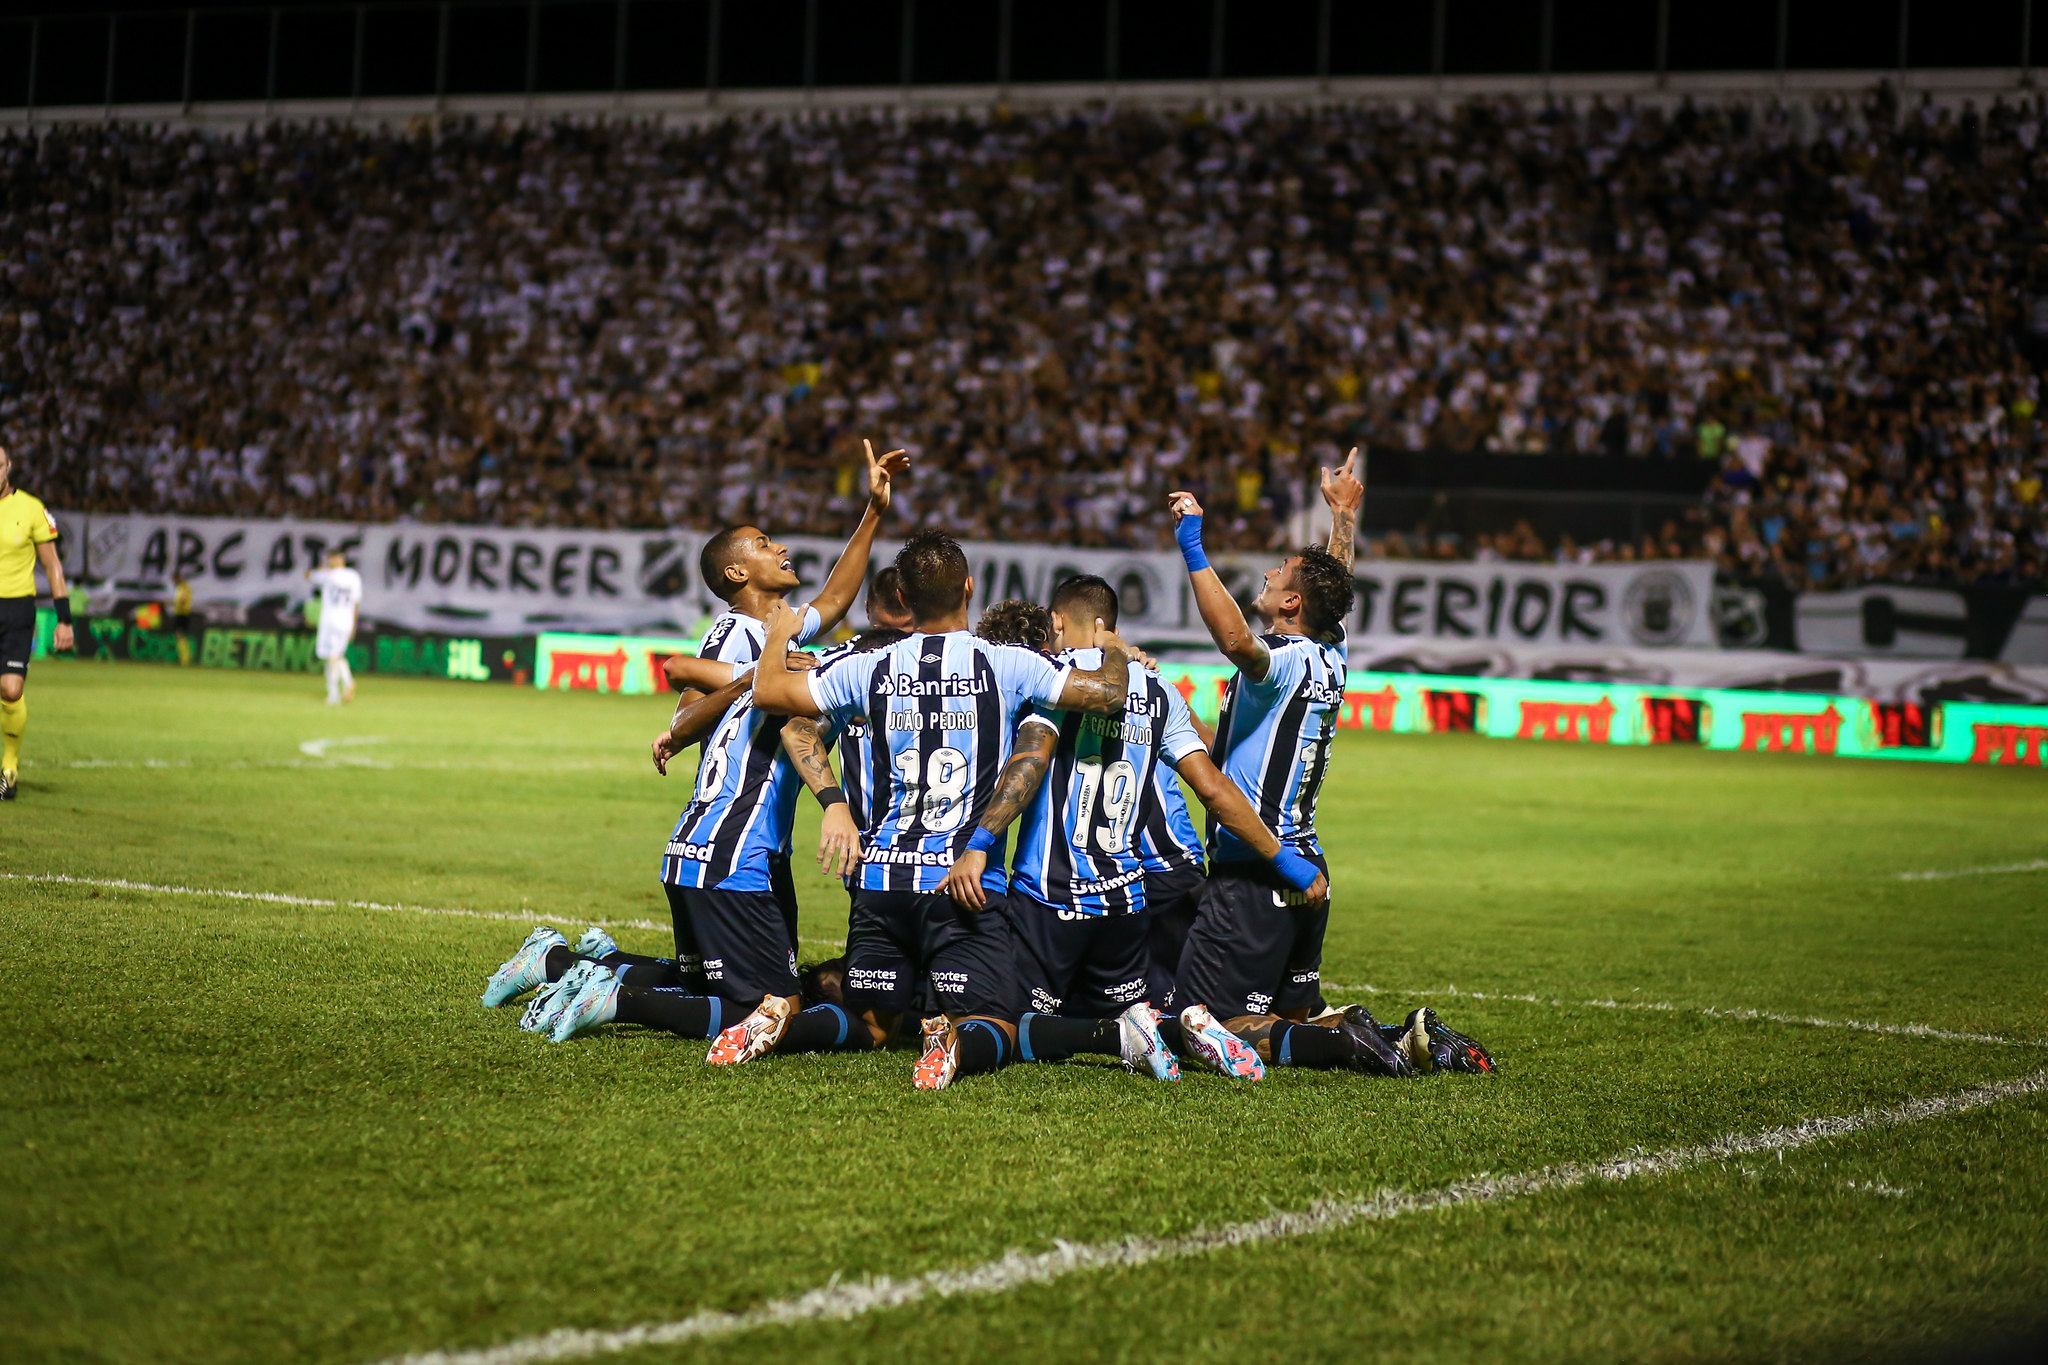 Grêmio x [Opponent]: A Clash of Titans